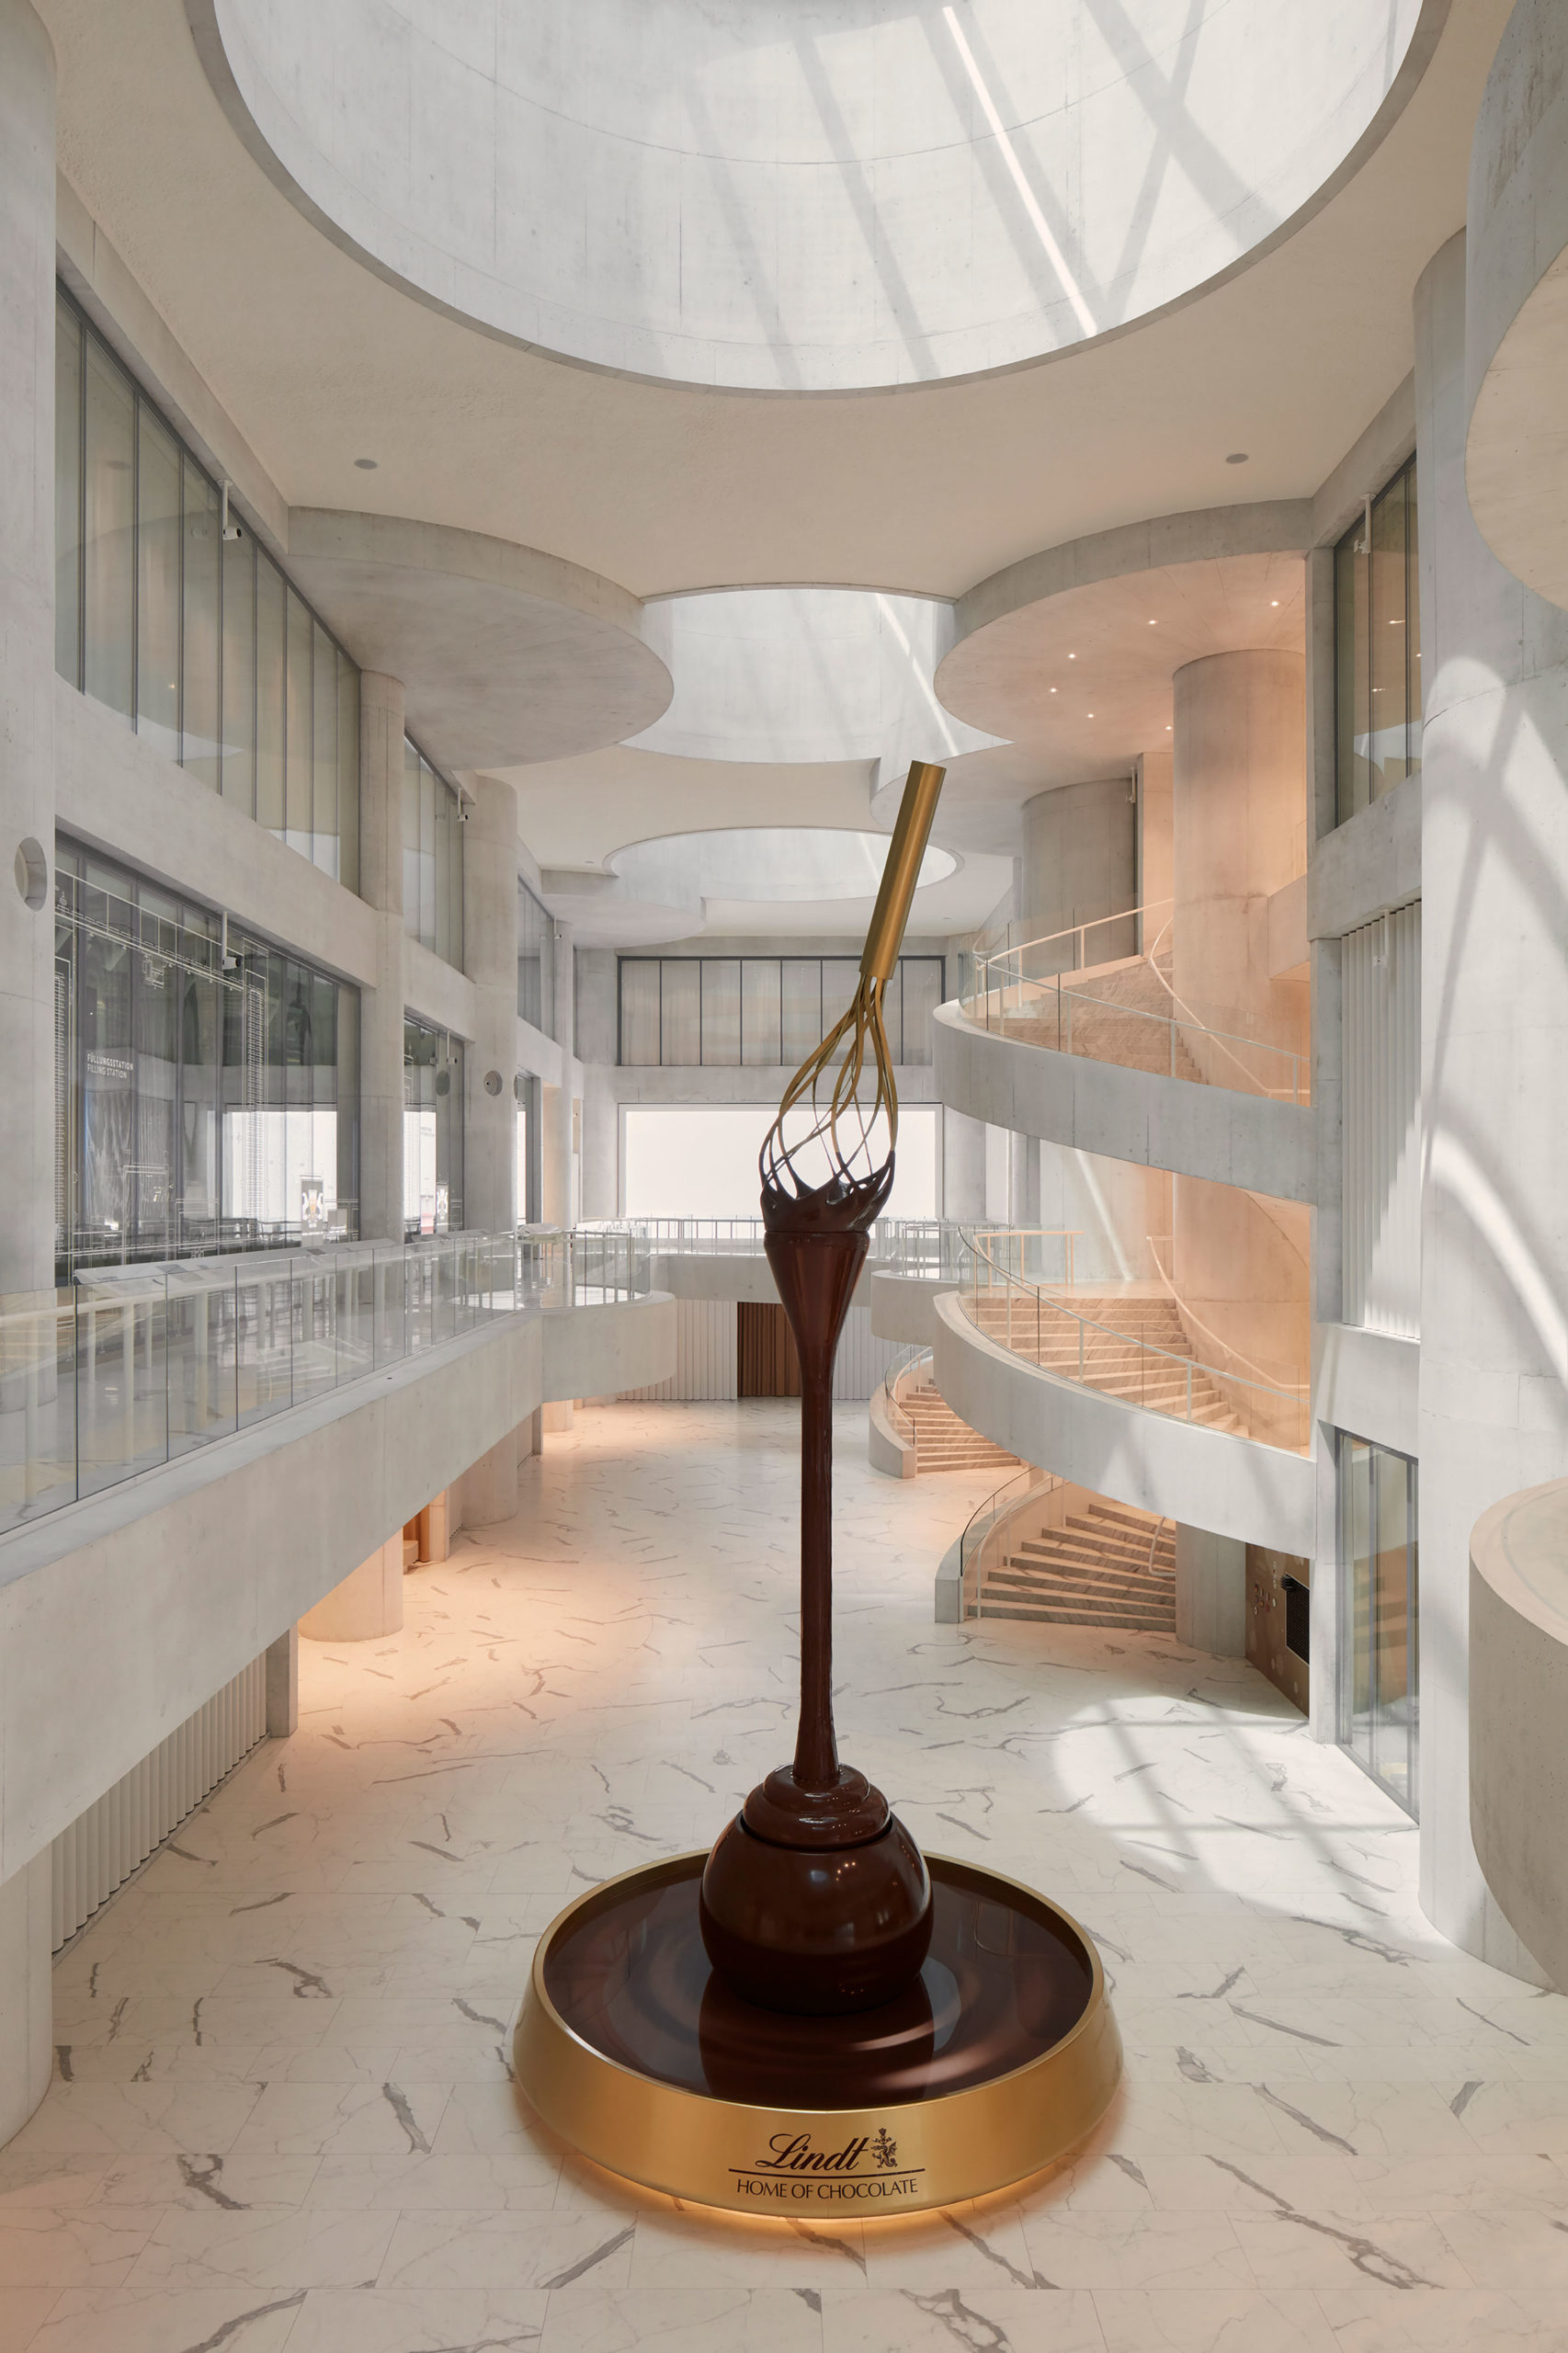 クリスト ガンテンバインの設計で チューリッヒに チョコレート会社の博物館 リンツ ホーム オブ チョコレート が完成 建築を特徴づける高さ15mのアトリウムは古典的で秩序を感じさせる空間 Architecturephoto Net